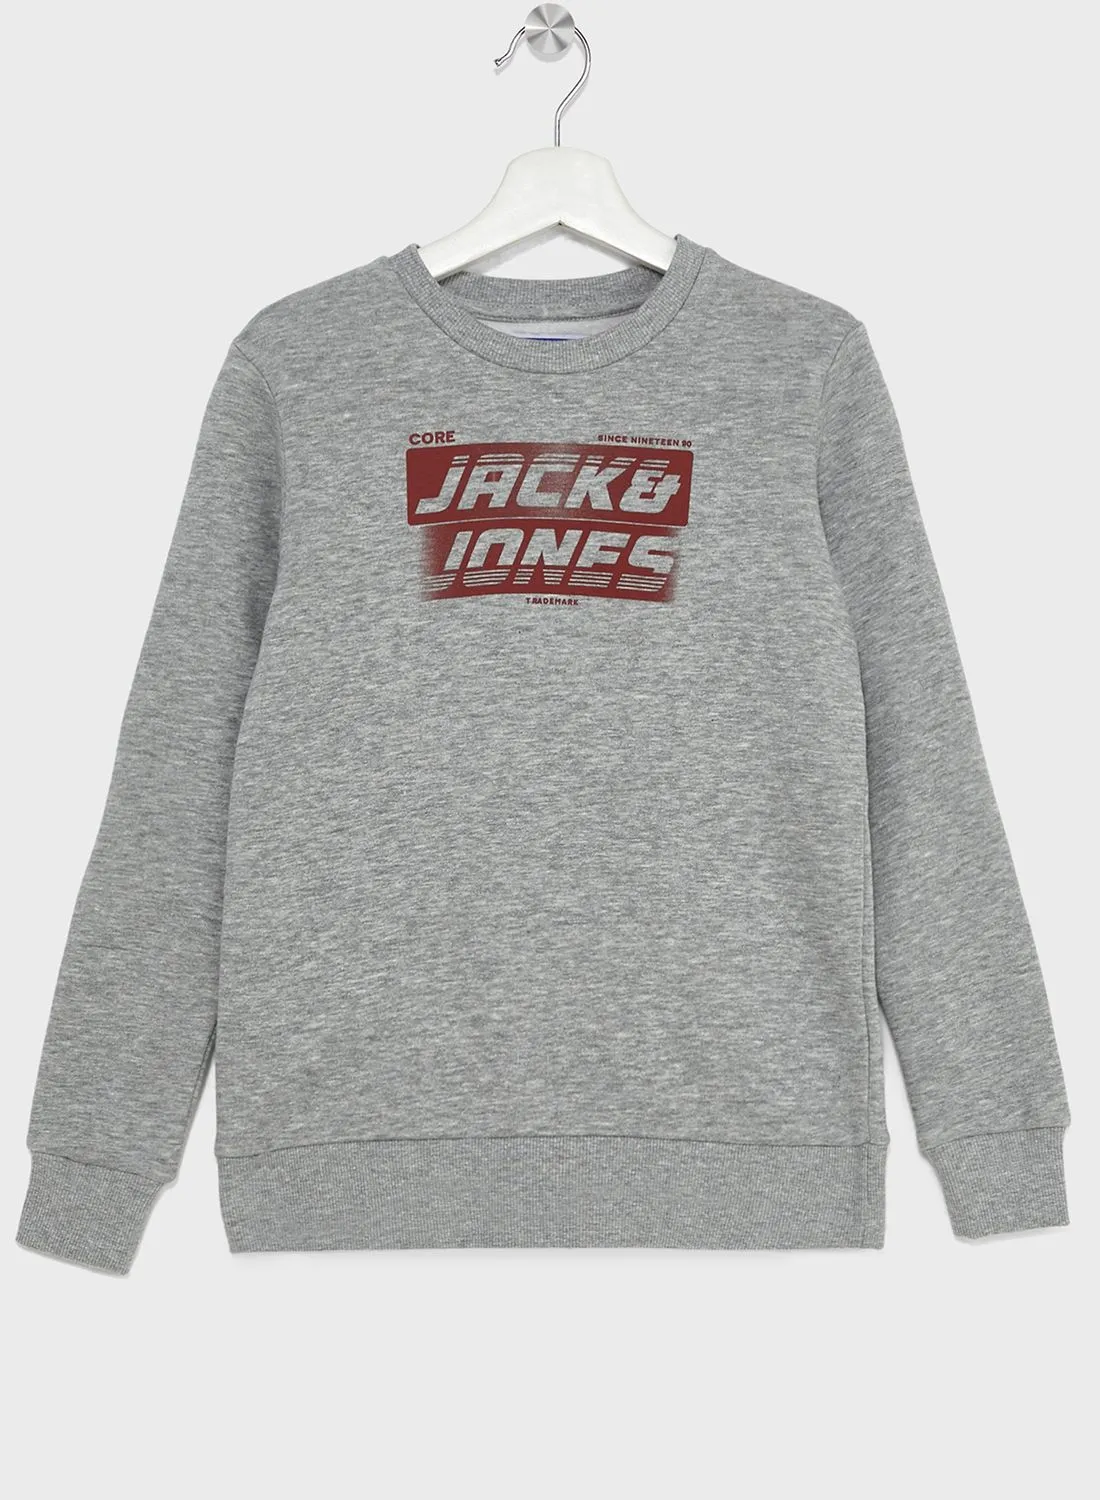 JACK & JONES Youth Logo Sweatshirt